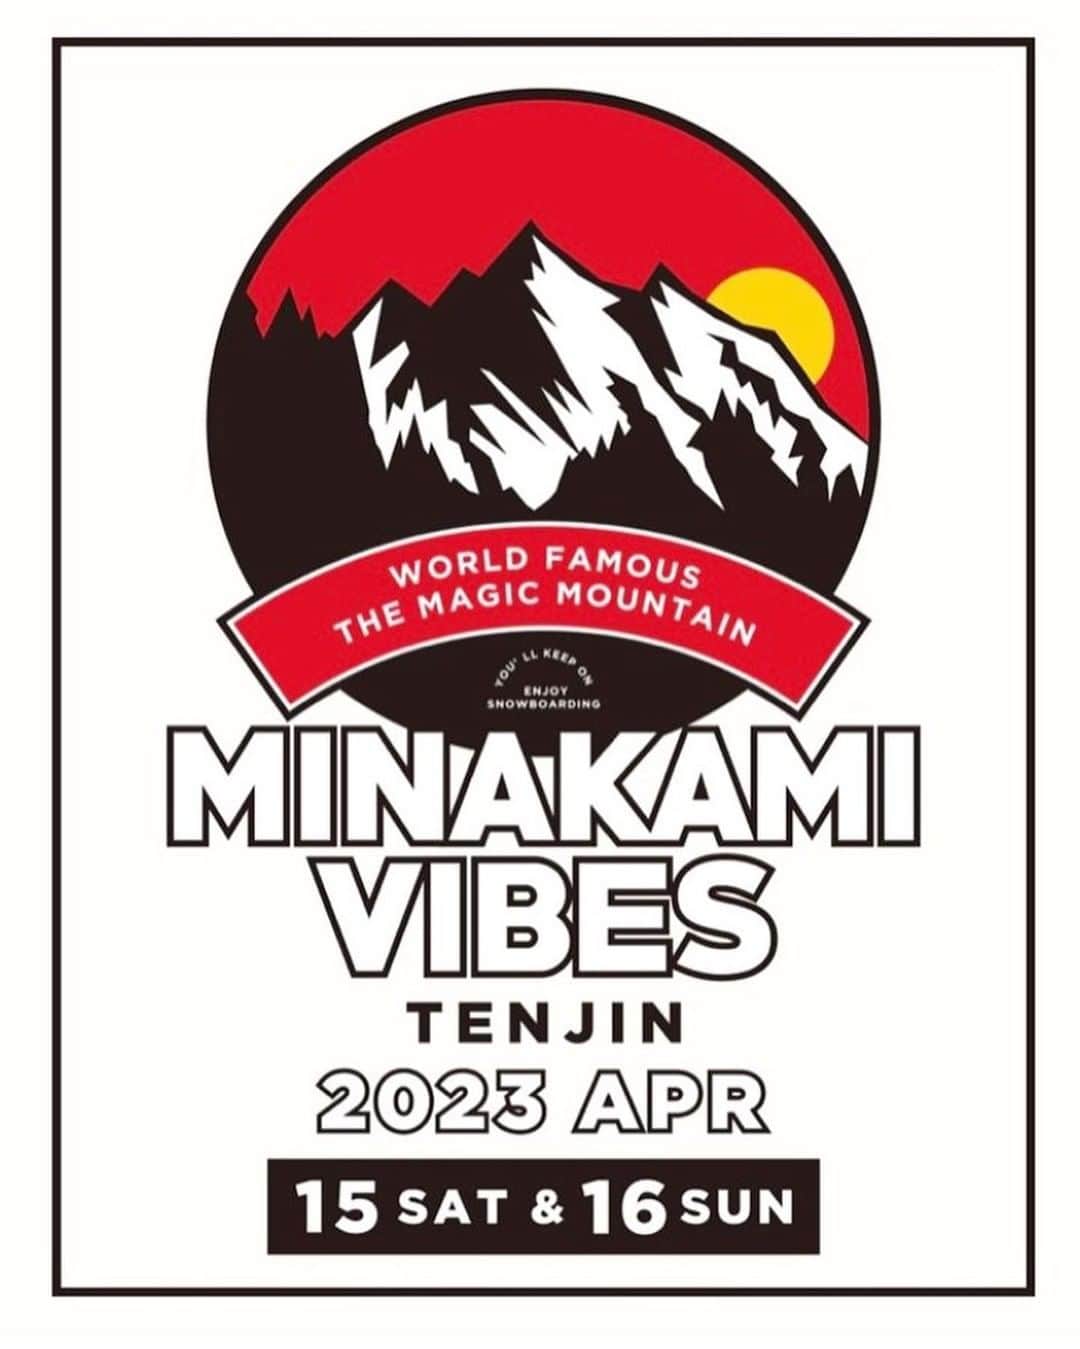 dragonalliancejapan （公式）のインスタグラム：「春の祭典 ミナカミバイブス🌄 遂に谷川岳天神平スキー場にて、記念すべき第10回 @minakamivibes の開催が決定❗️ 谷川岳ローカル勝山尚徳を中心にミナカミディガーズによって作り出されるMADE IN MINAKAMIコースを是非みんなで楽しみましょう🌞  当日はDRAGONブースも出店いたします。2023-2024最新来季ゴーグルや、春山やサマータイムにピッタリのLUMALENSサングラスなどの展示を予定しております。  以下、 @minakamivibes より、公式アナウンスです👇🏻  春の祭典MINAKAMI VIBES 2023 谷川岳天神平スキー場にて開催決定！　  遂に開催10回目を迎えるMINAKAMI VIBES 特別仕様でお待ちしております  【日時】2023年4月15日〜16日 【開催場所】谷川岳天神平スキー場 【受付】8:30〜 【受付場所】平リフト横バイブスパークにて 【エントリー費】1日4000円　小学生まで無料 【リフトチケット】1日3500円 【パークオープン】9:30〜15:15 【試乗会】9:00〜14:30 【バイブスジャンケンポン】15:30〜  @tanigawadake_ropeway」